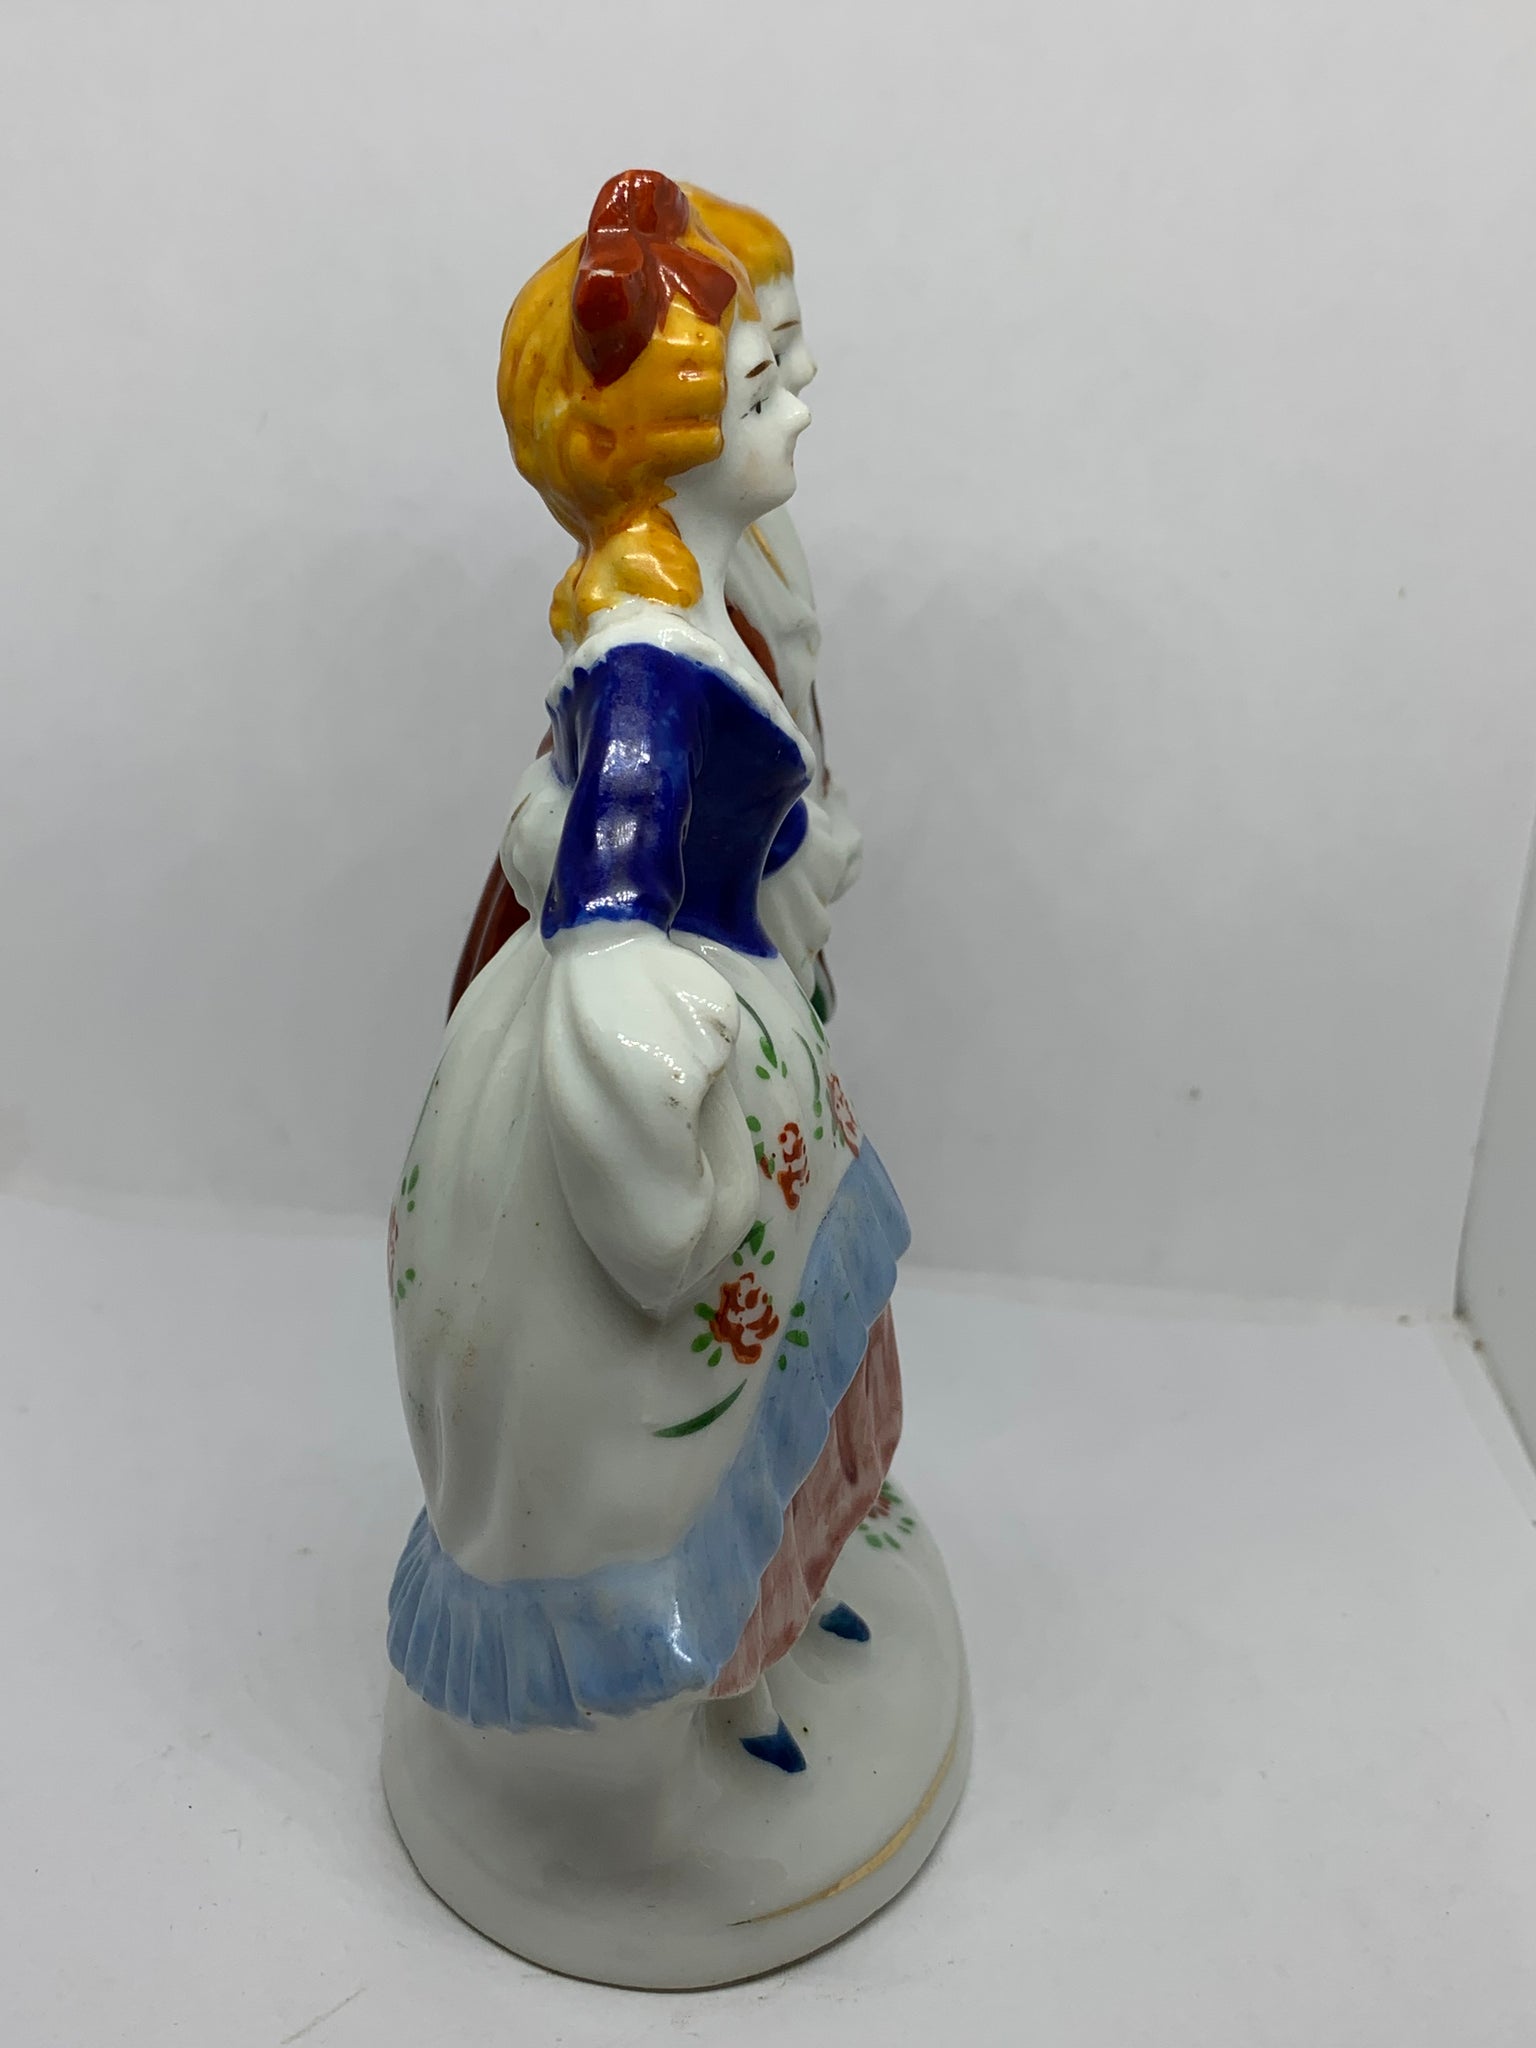 Vintage Japan Porcelain Victorian Colonial Couple Figurine Blue & White  (5.5)